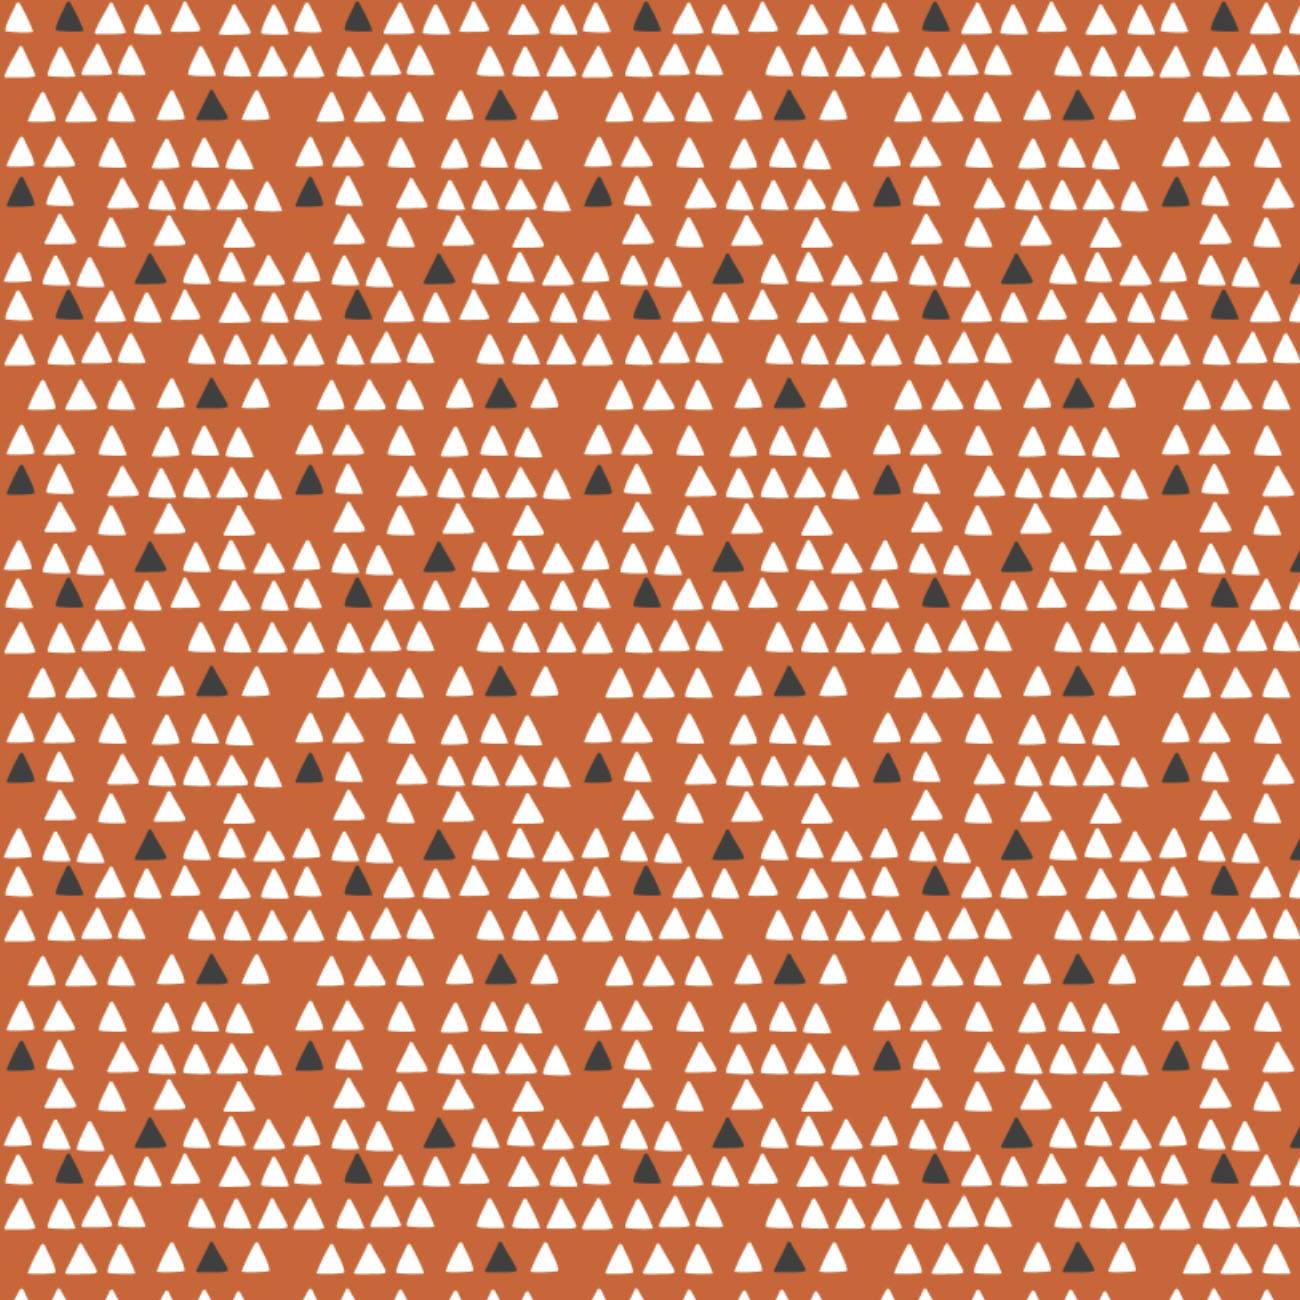 Penguin Triangles on Burnt Orange - Weave & Woven